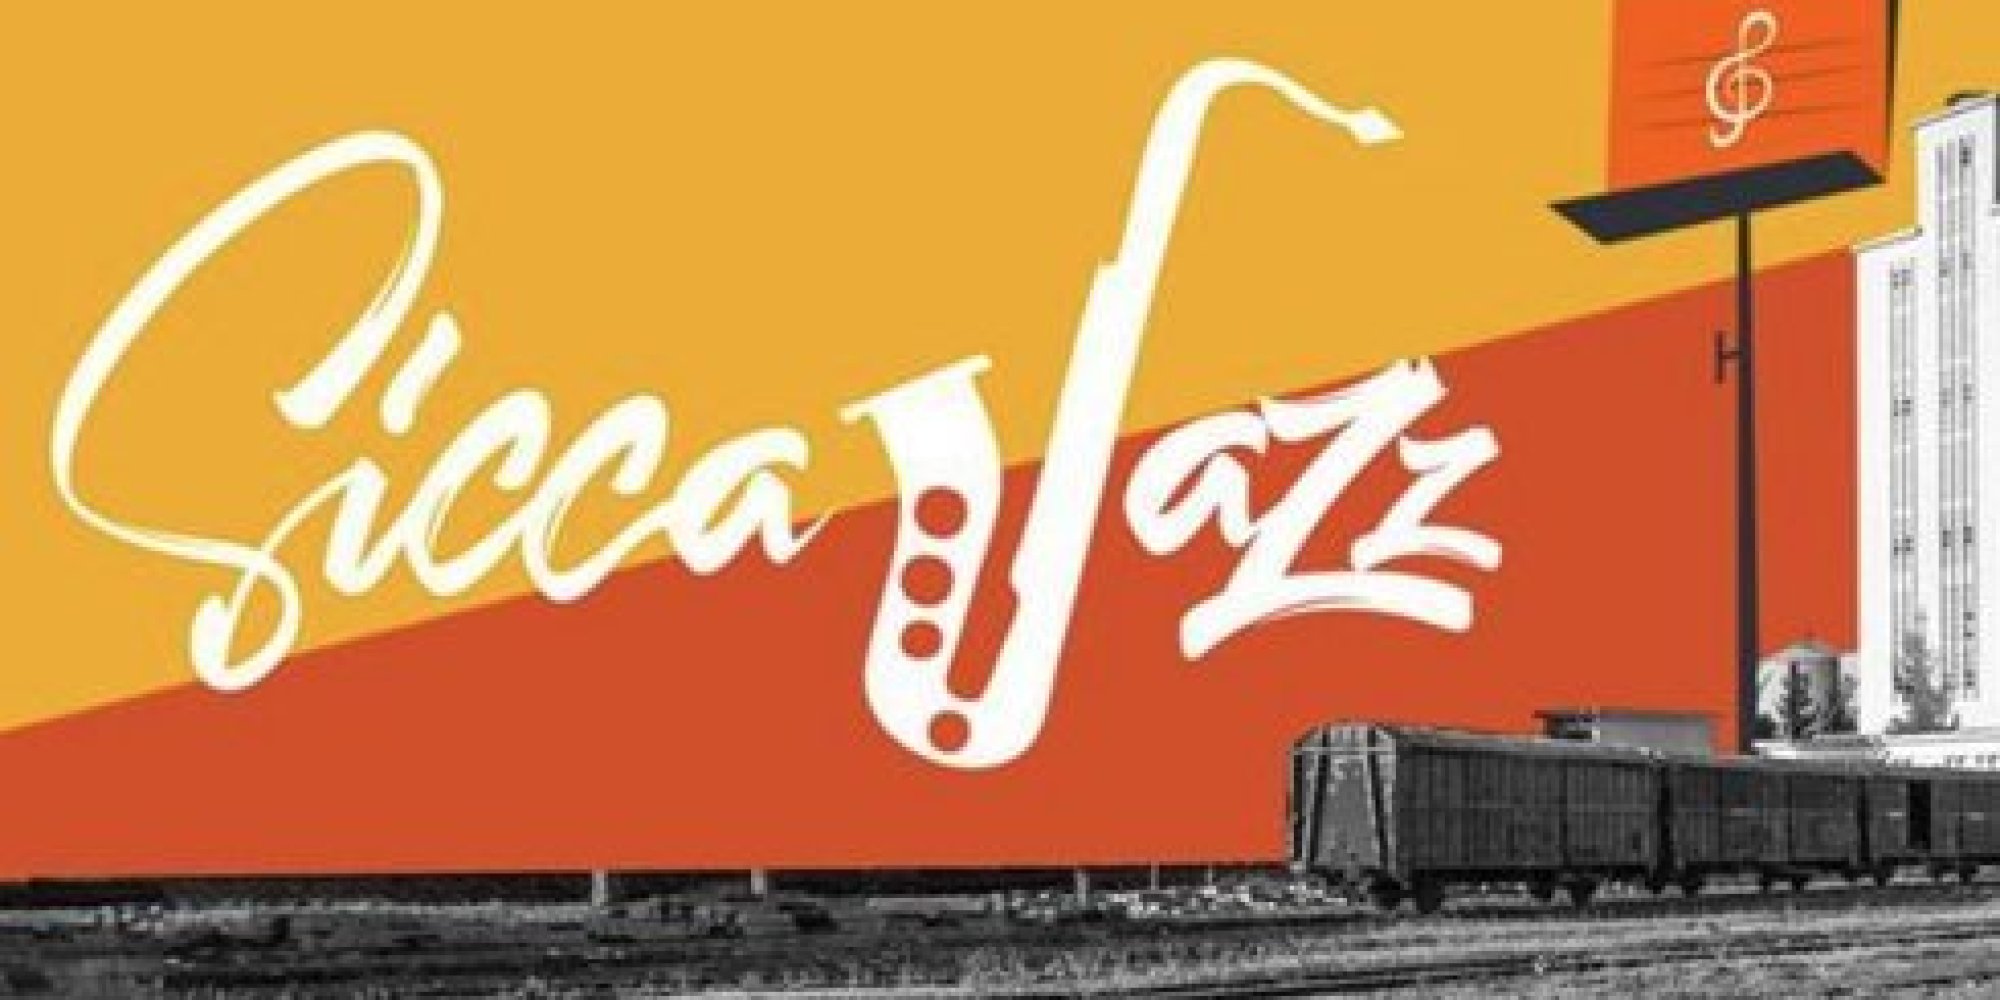 édition de Sicca Jazz